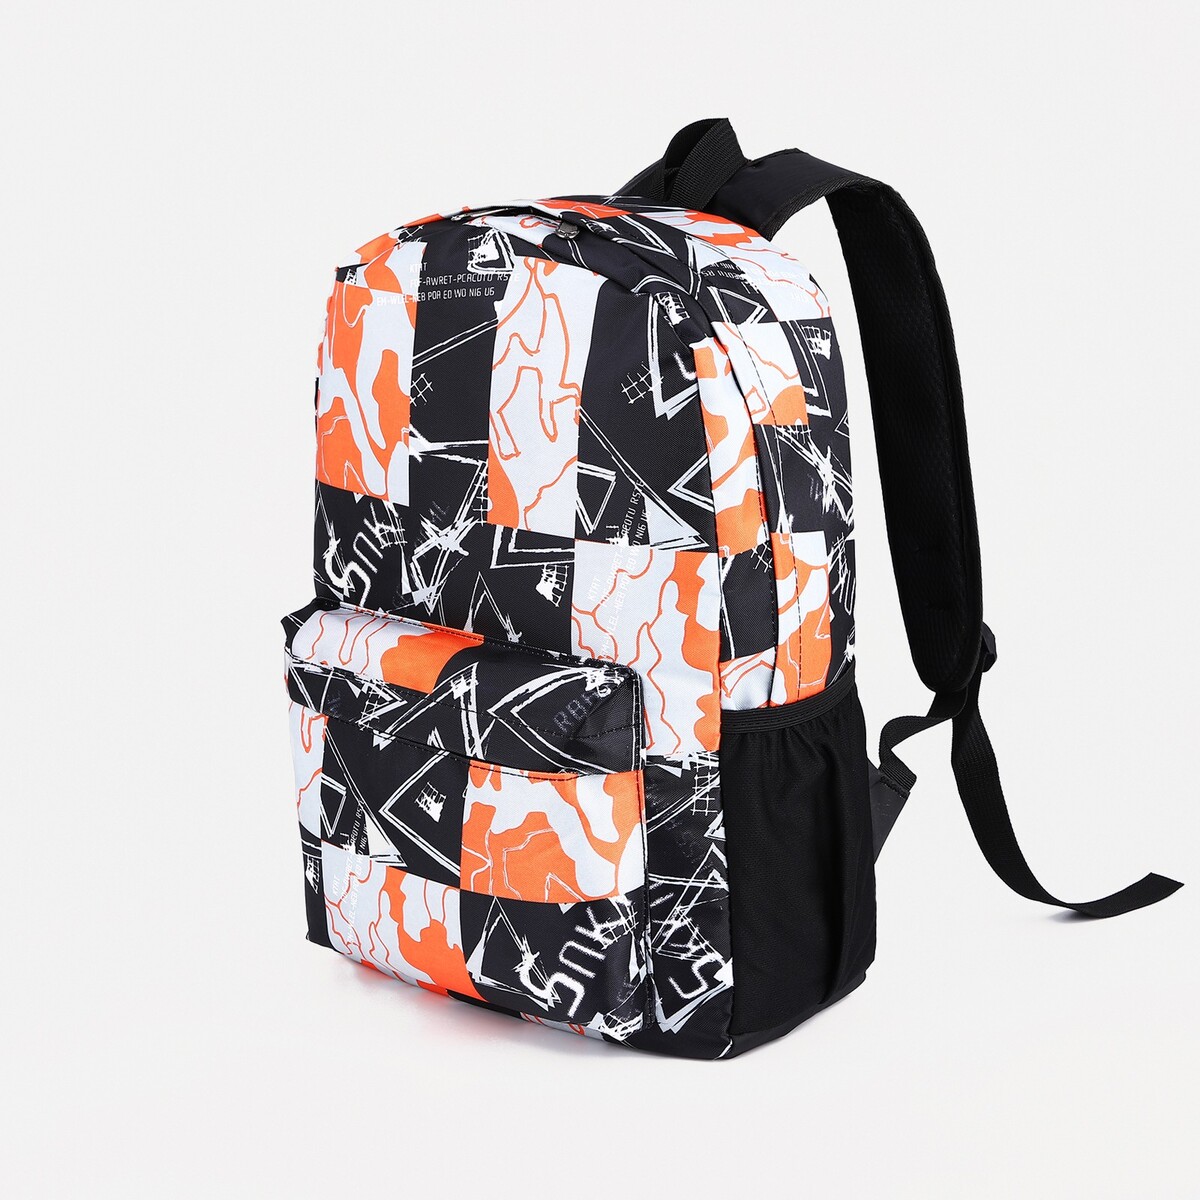 Рюкзак школьный из текстиля на молнии, 3 кармана, цвет оранжевый/черный рюкзак 31 45 15 см отд на молнии 4 н кармана оранжевый